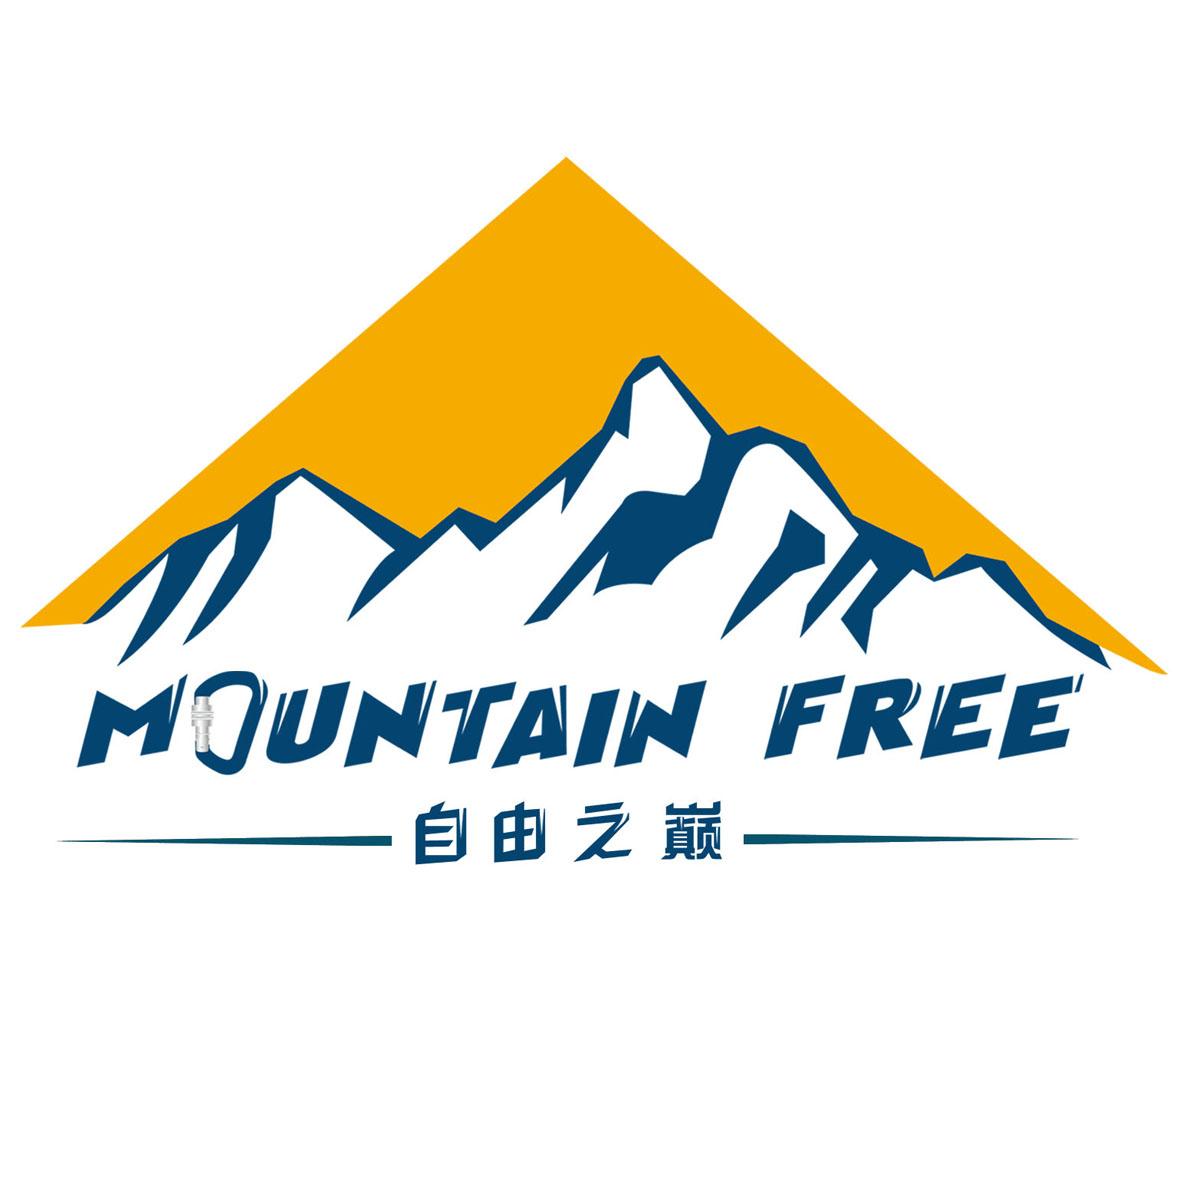 自由 之 巅 mountain free商标注册申请完成